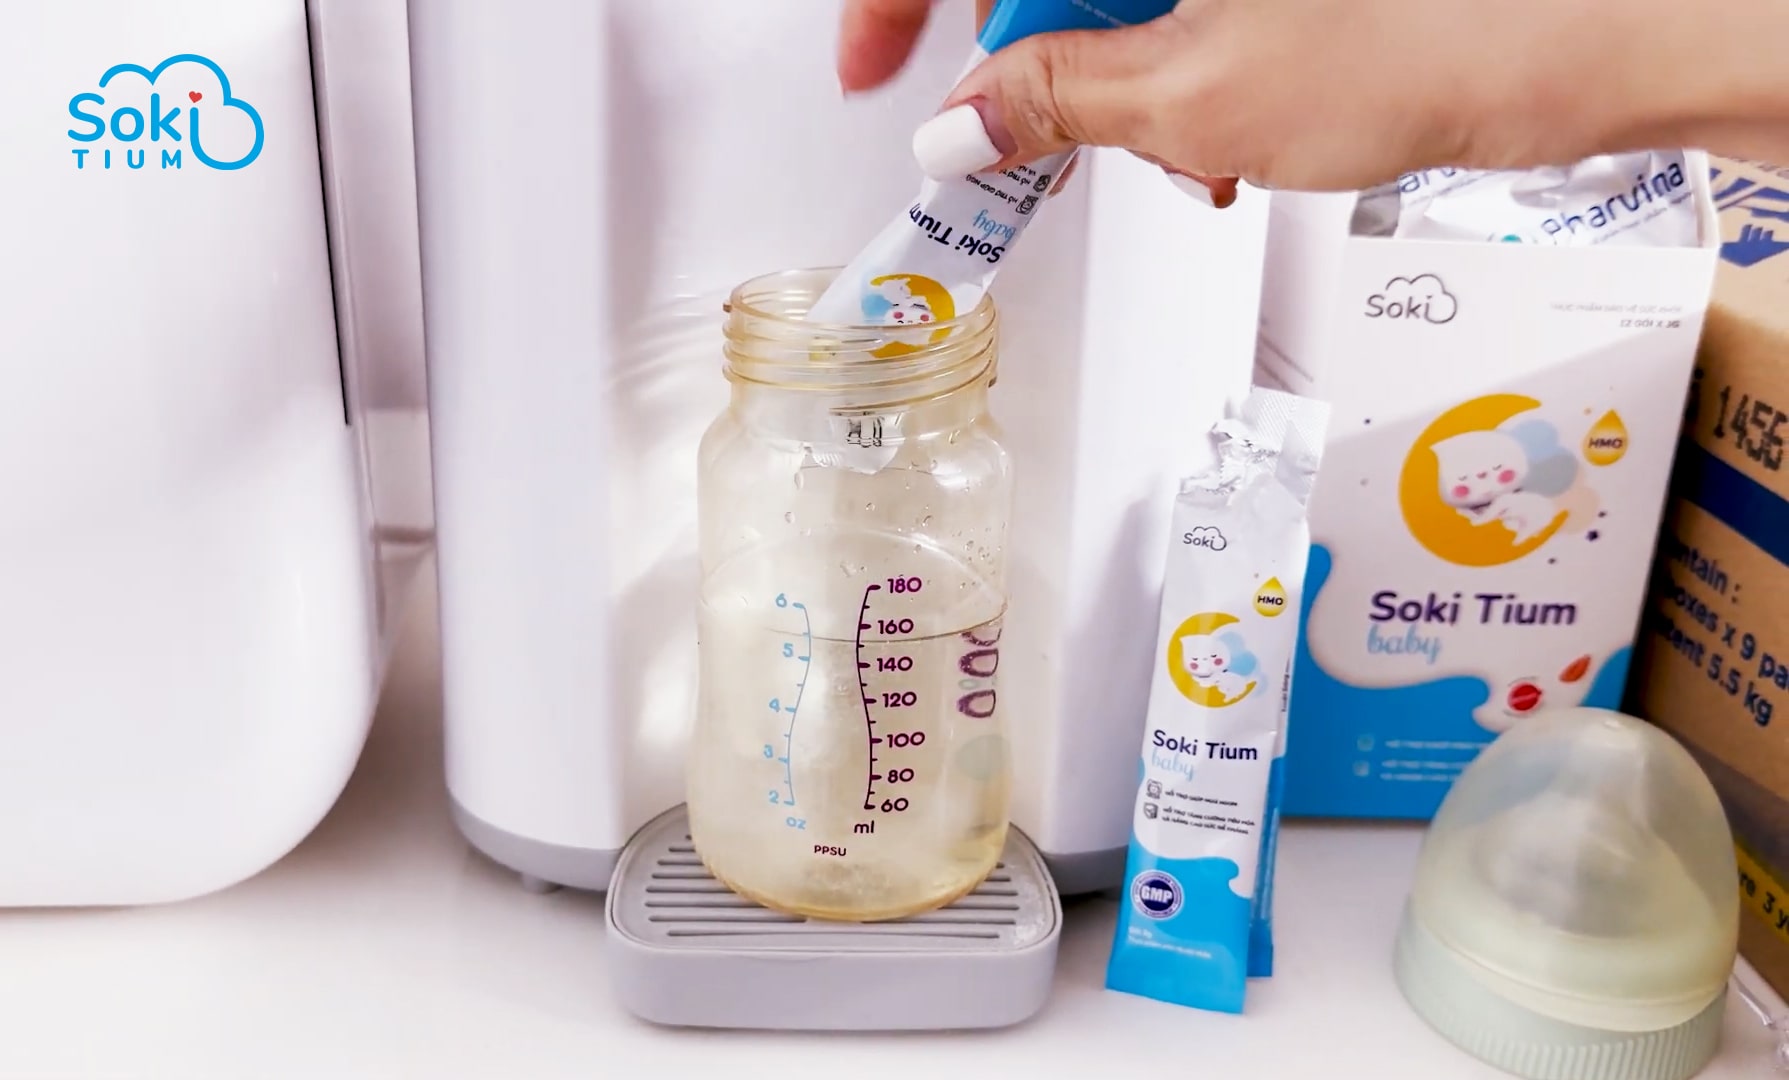 Đạm sữa thủy phân Lactium và sữa non Prodiet Colostrum là thành phần chính có trong sản phẩm Soki Tium